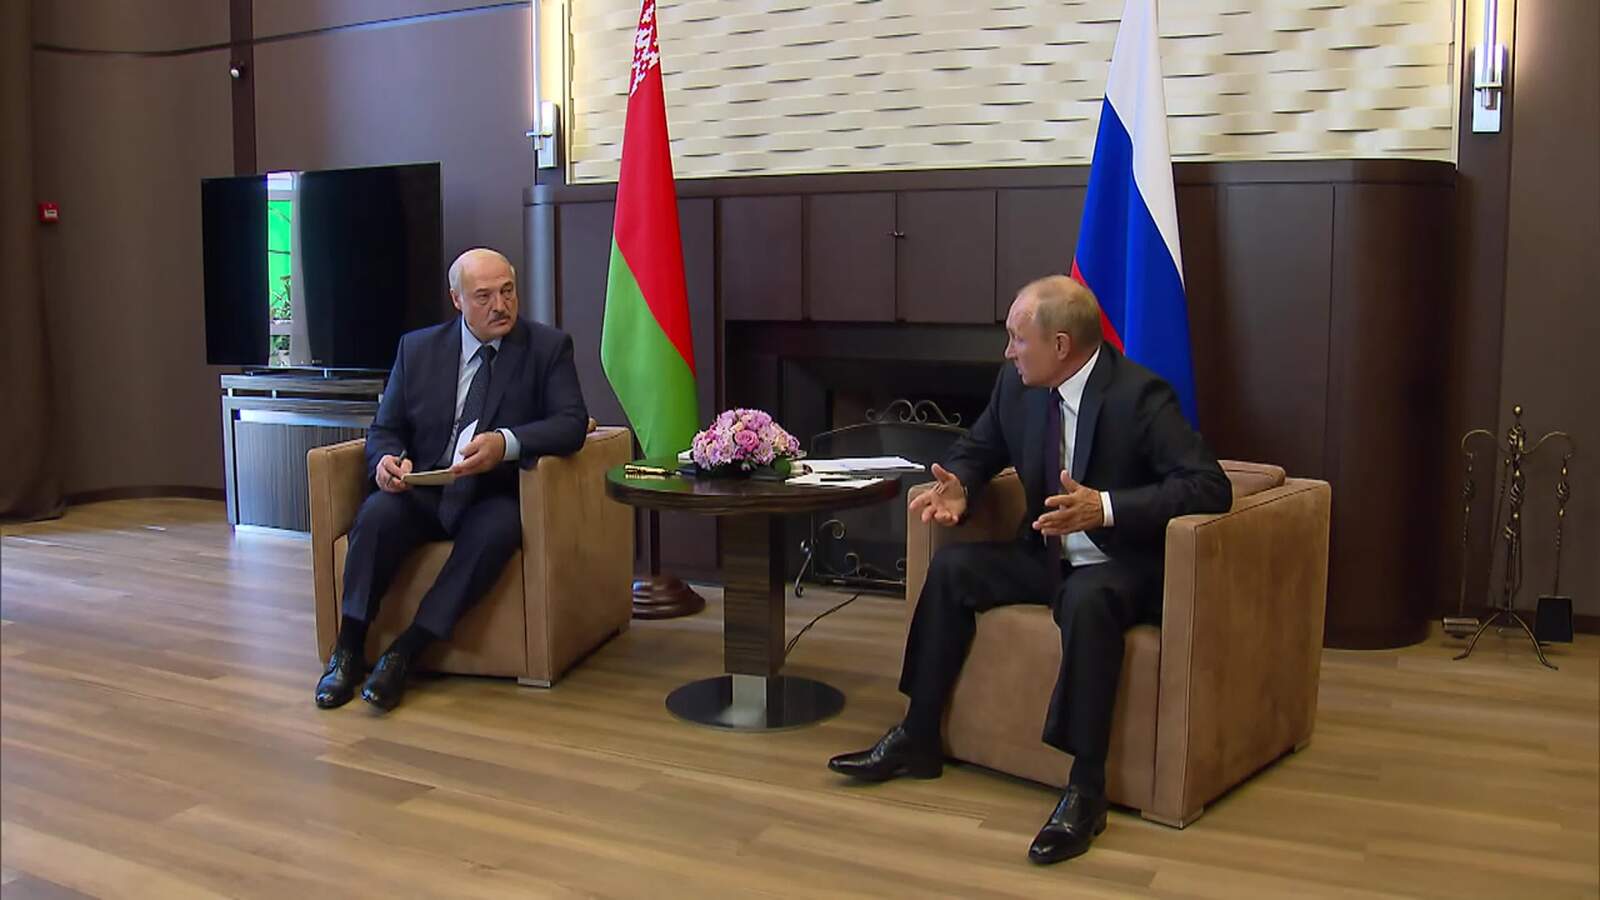 Сегодня состоятся переговоры Владимира Путина с Президентом Белоруссии Александром Лукашенко